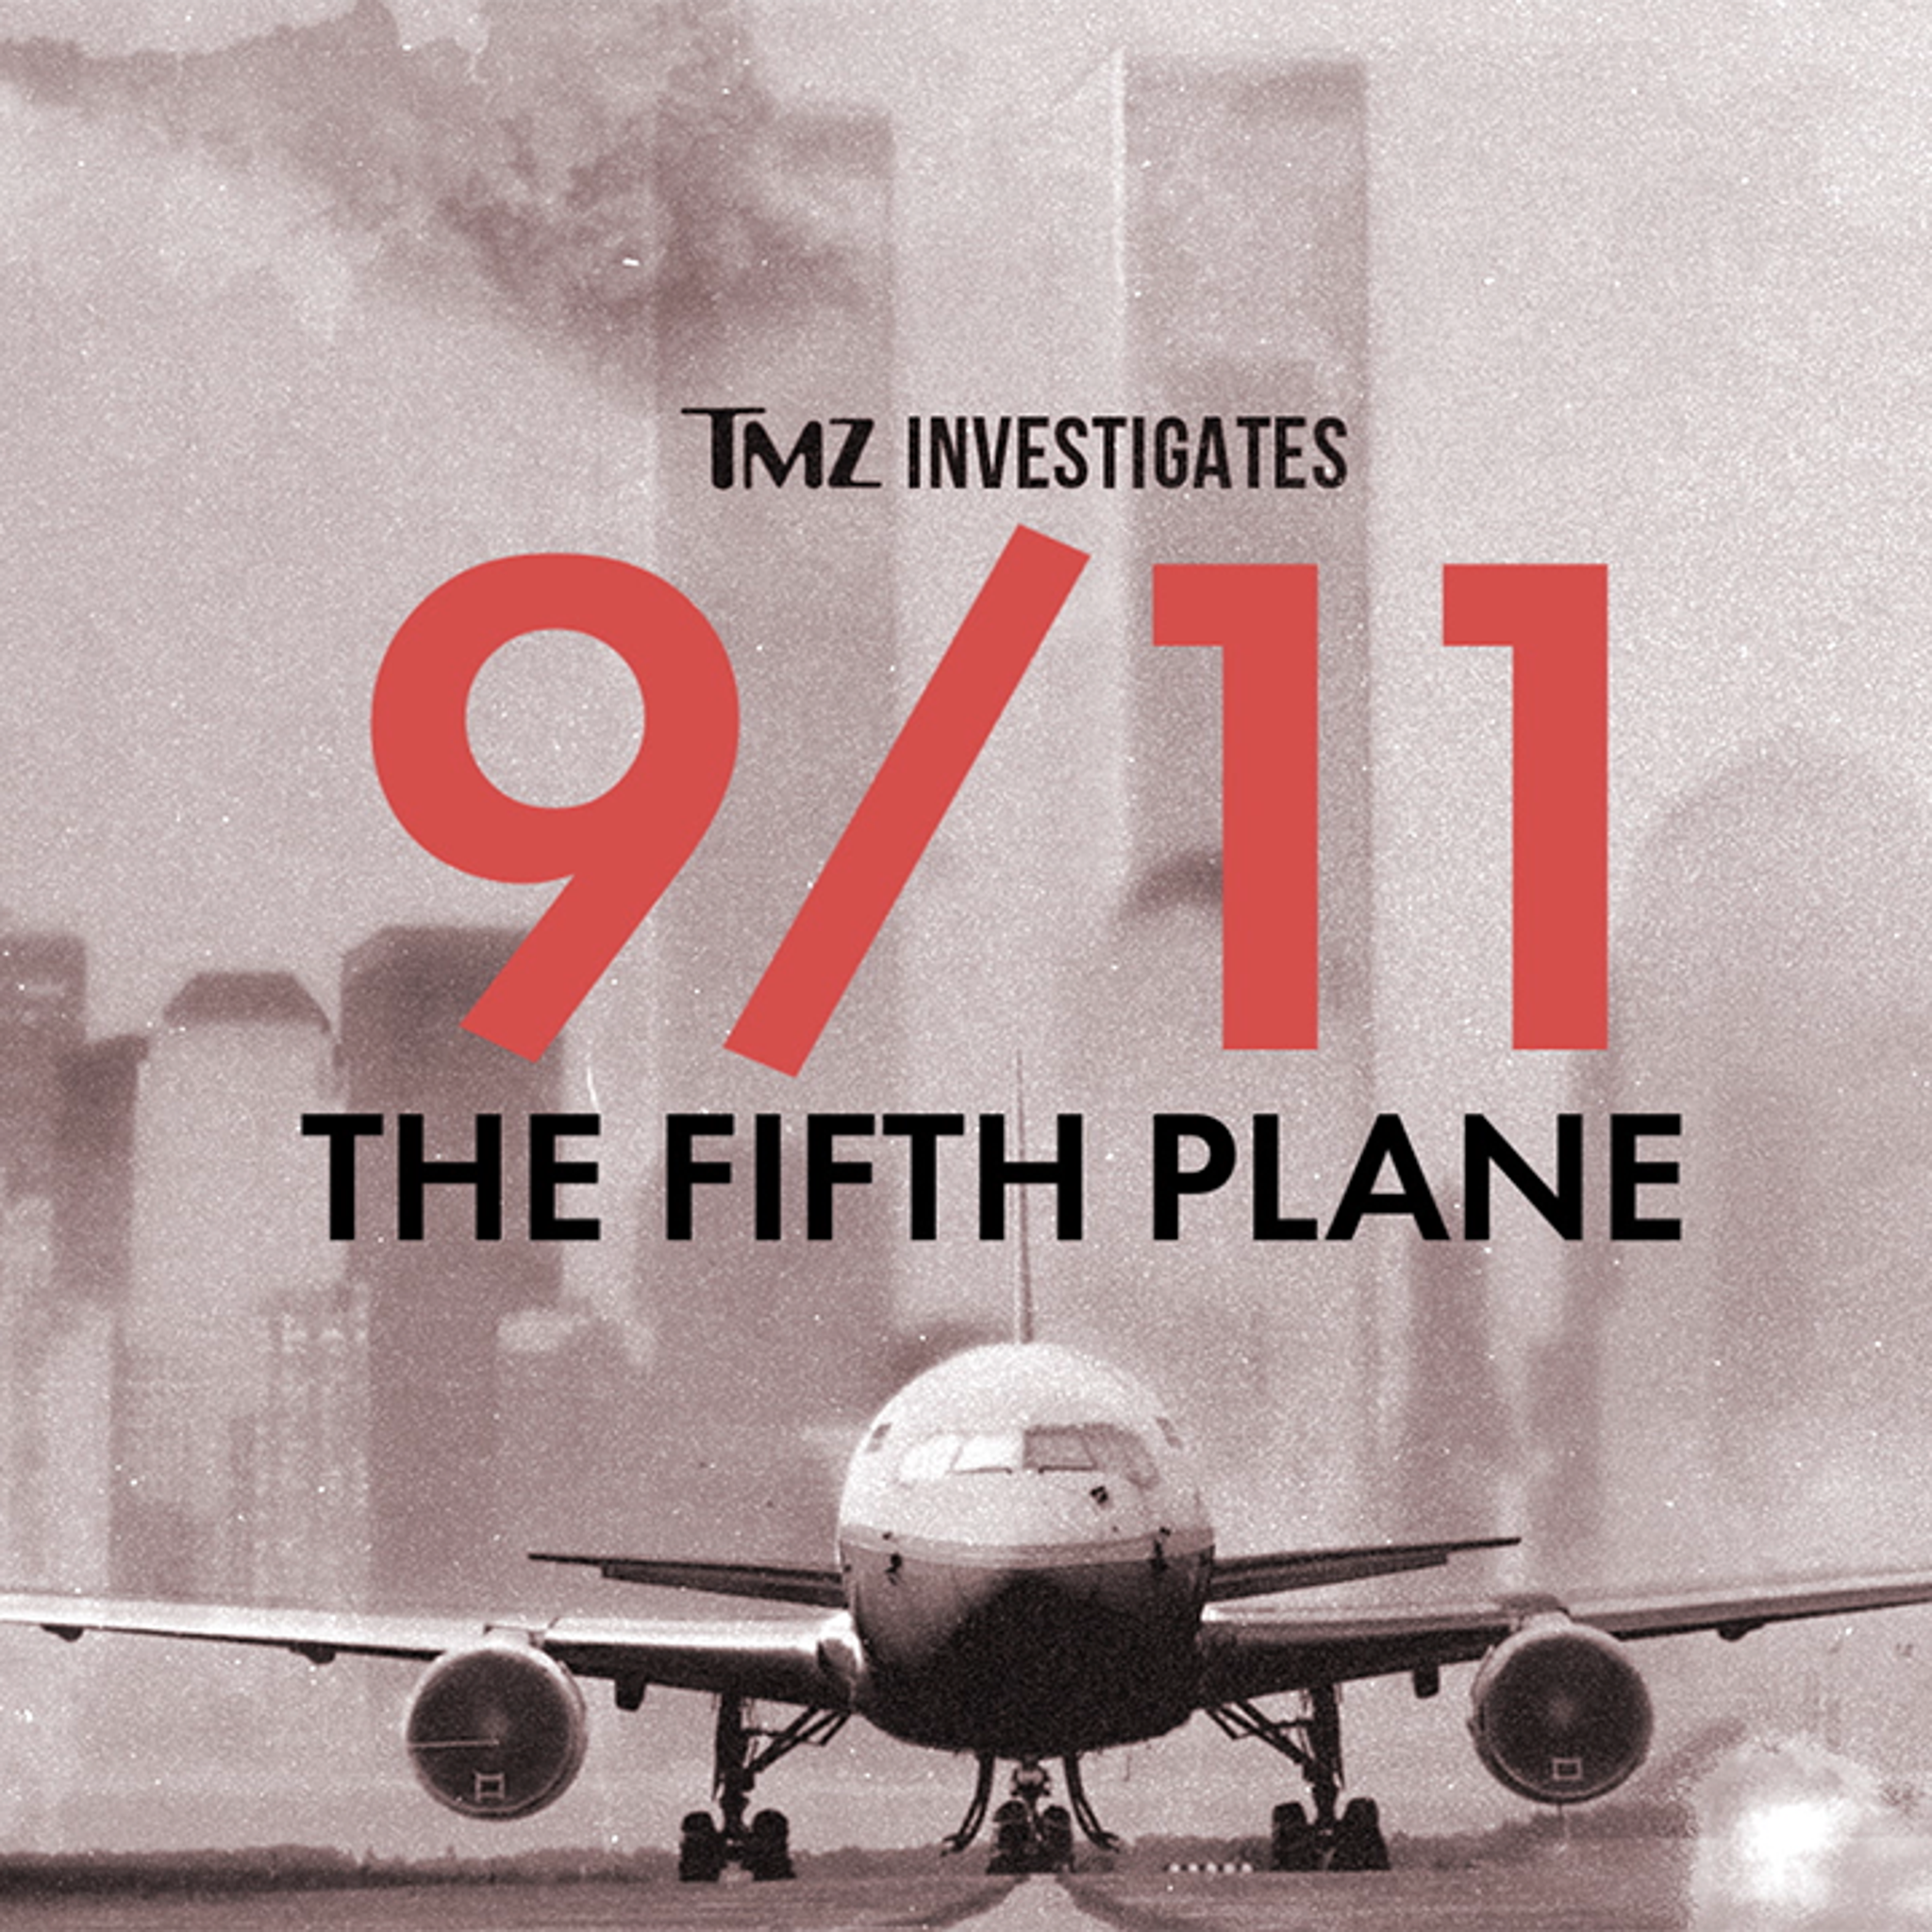 TMZ 5th Plane Hijackers Investigation